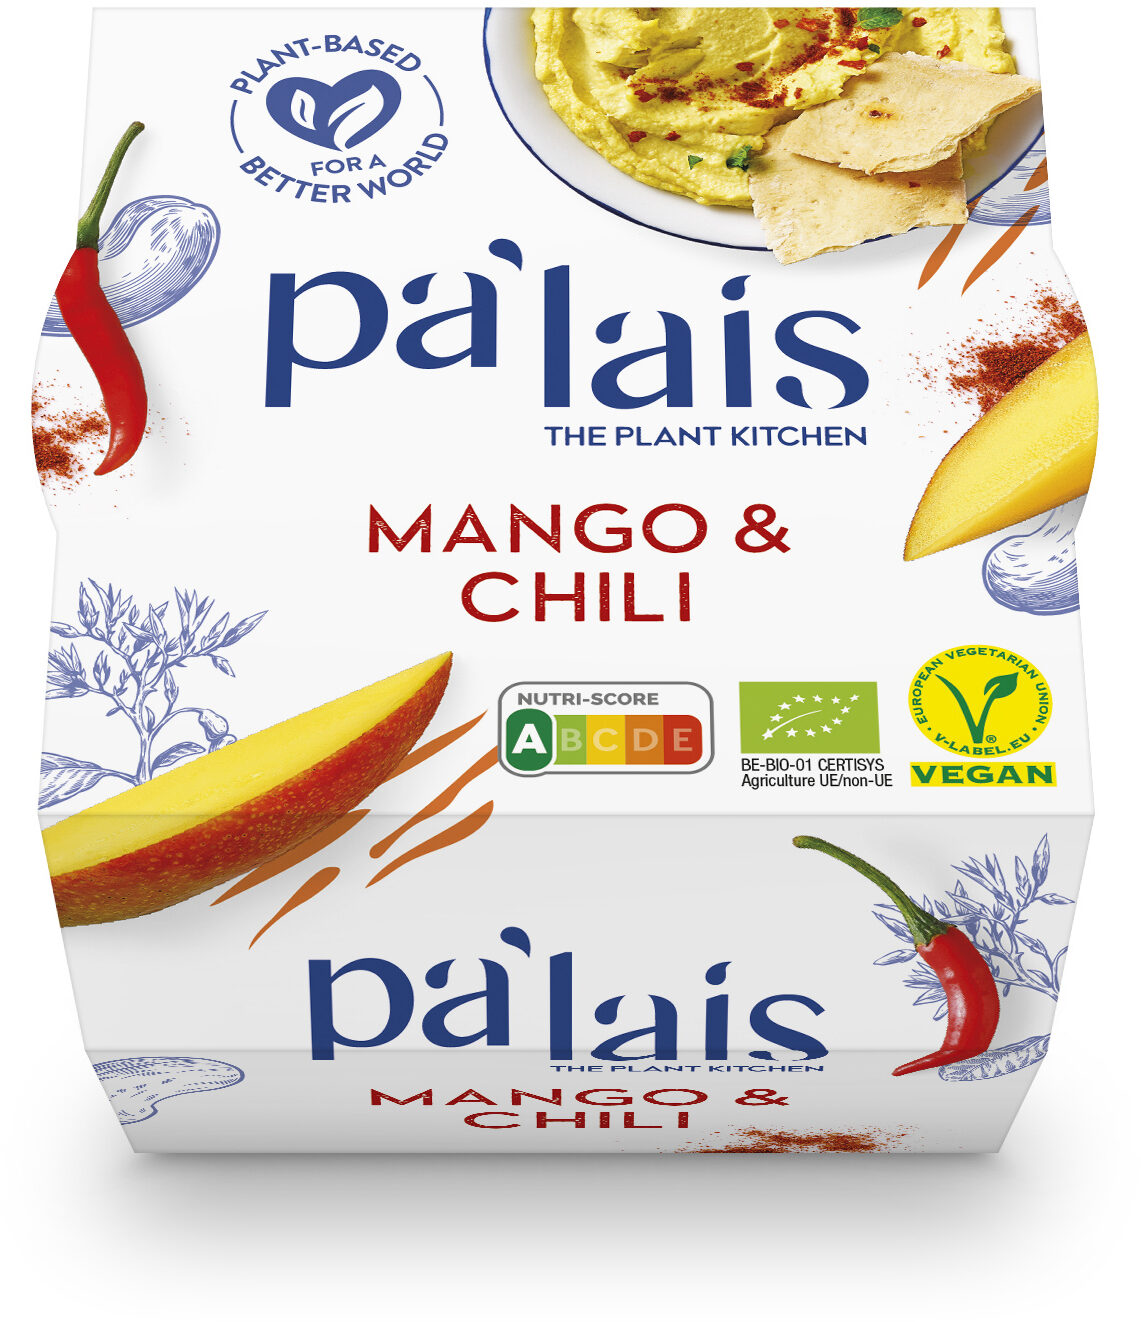 Pa'lais Mango & Chili - Product